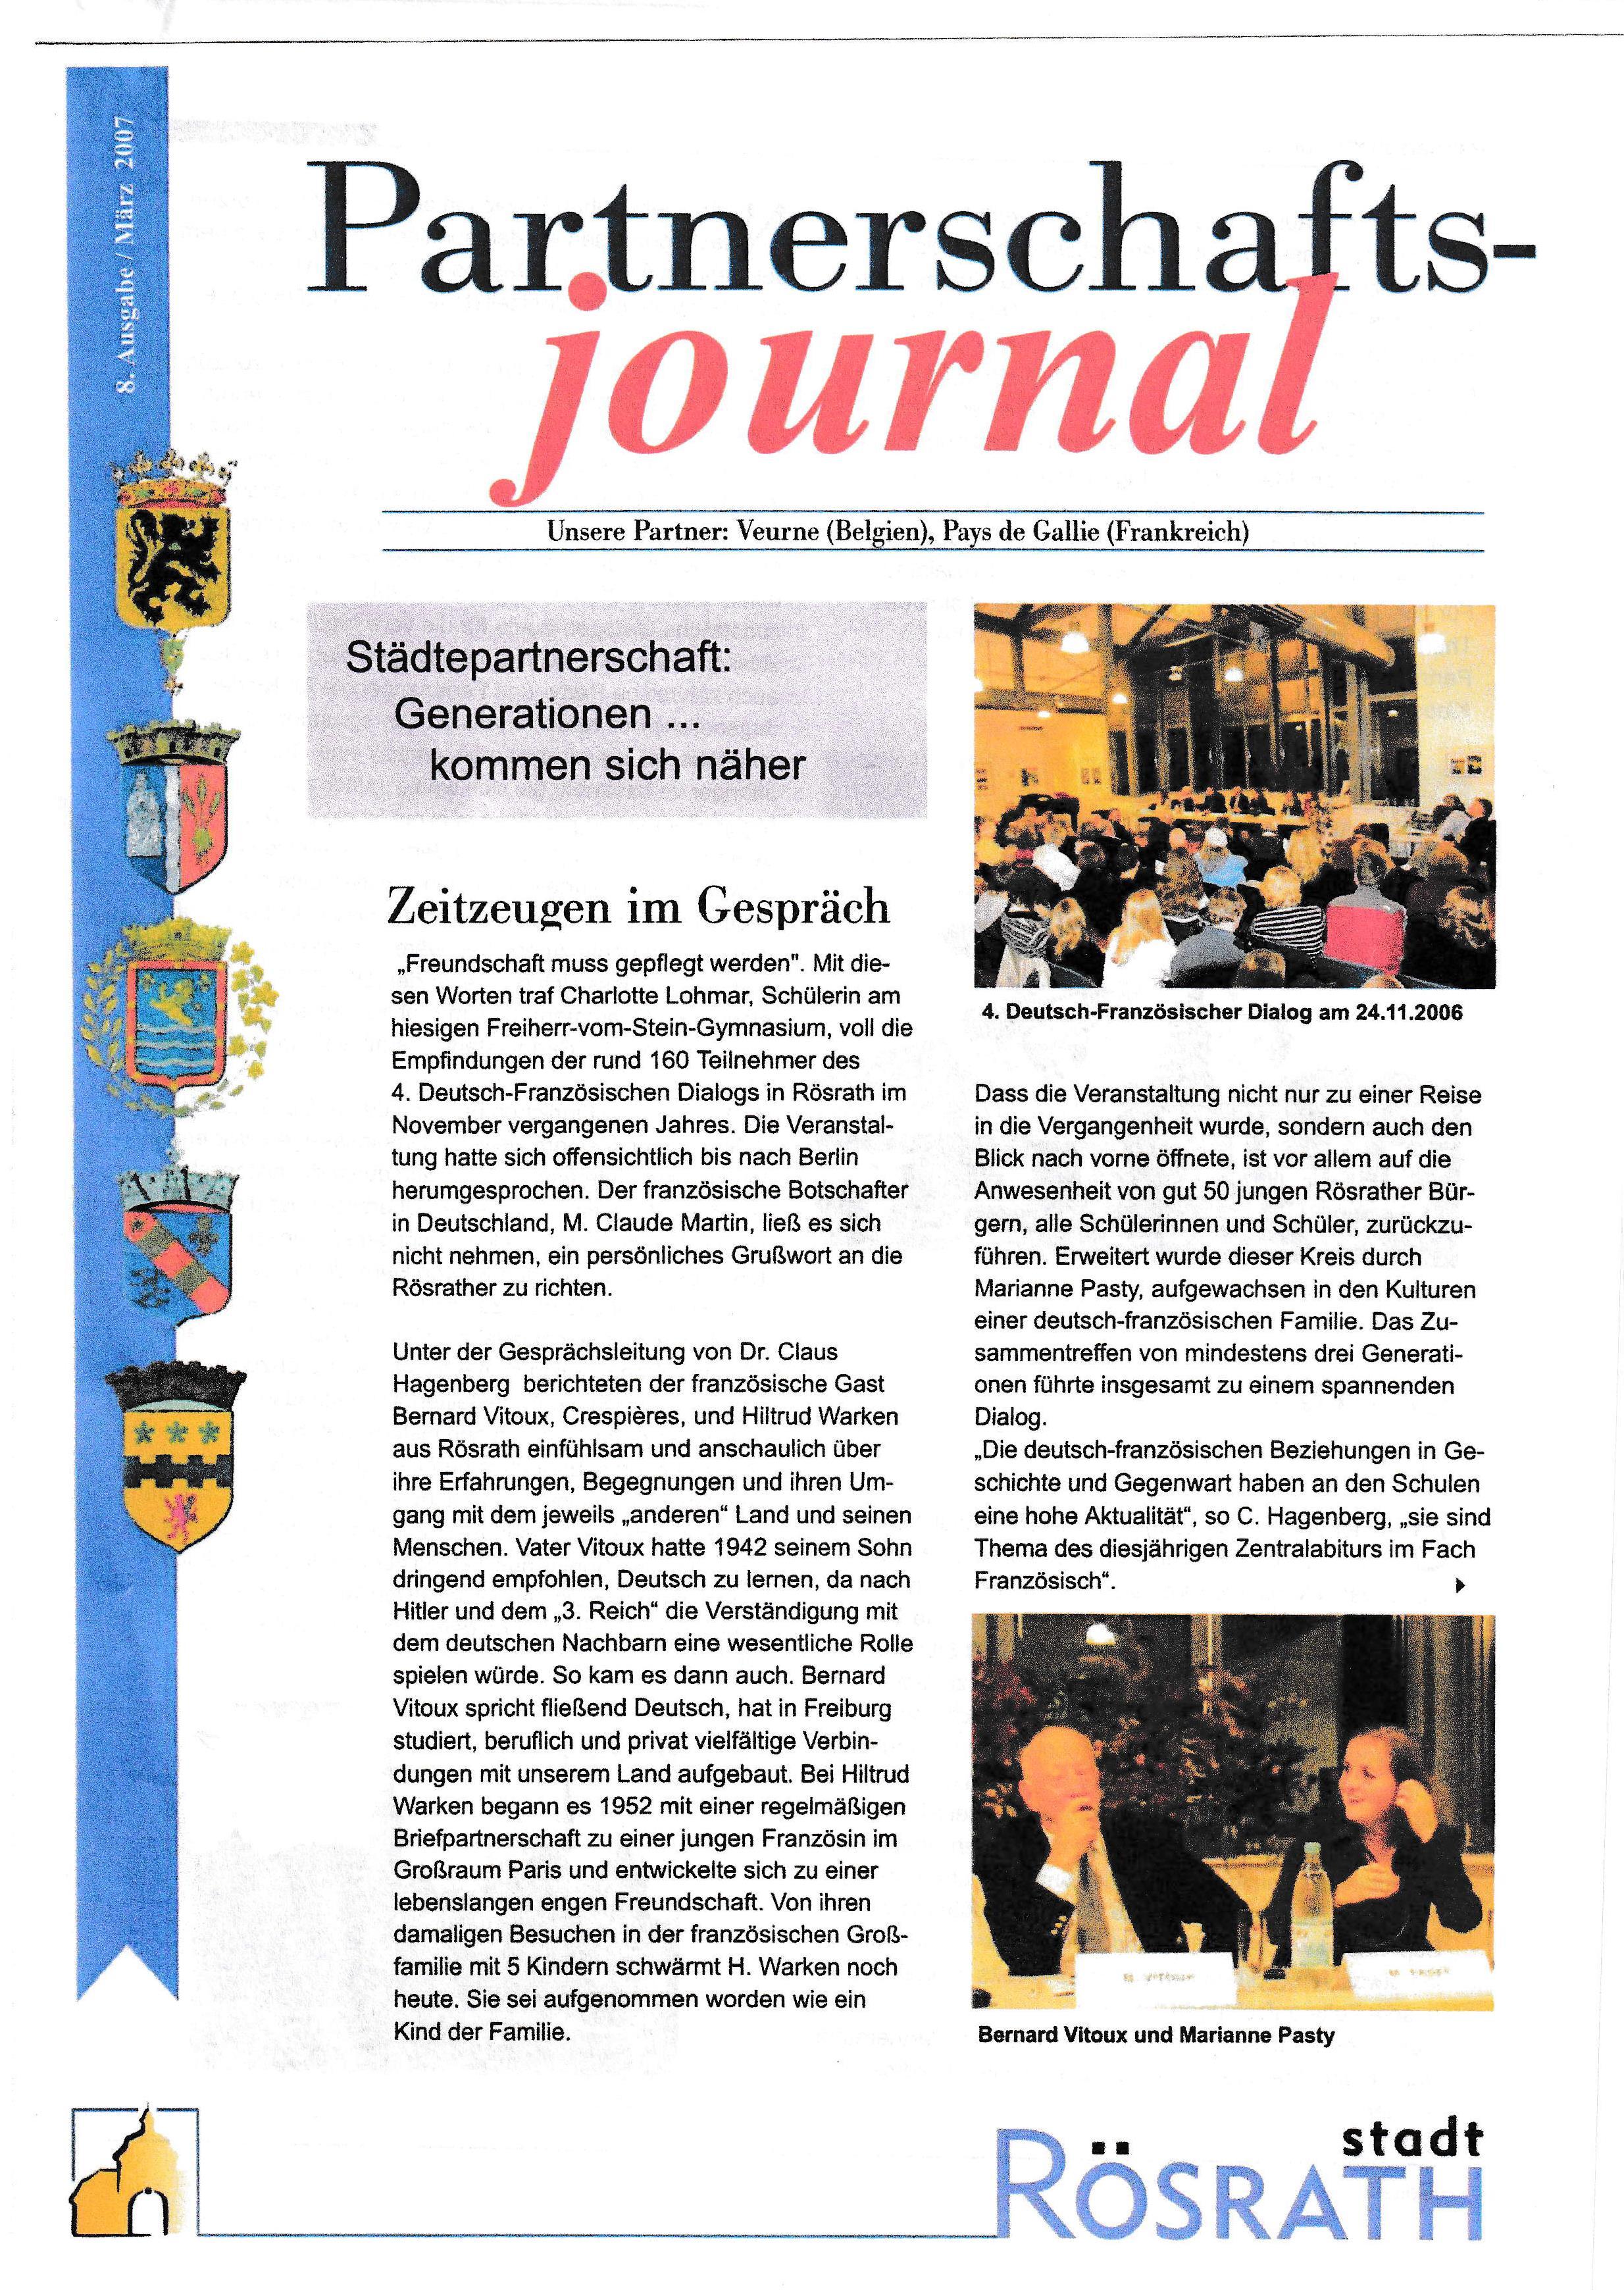 Vorschaubild für den Artikel Partnerschaftsjournal - Ausgabe 8